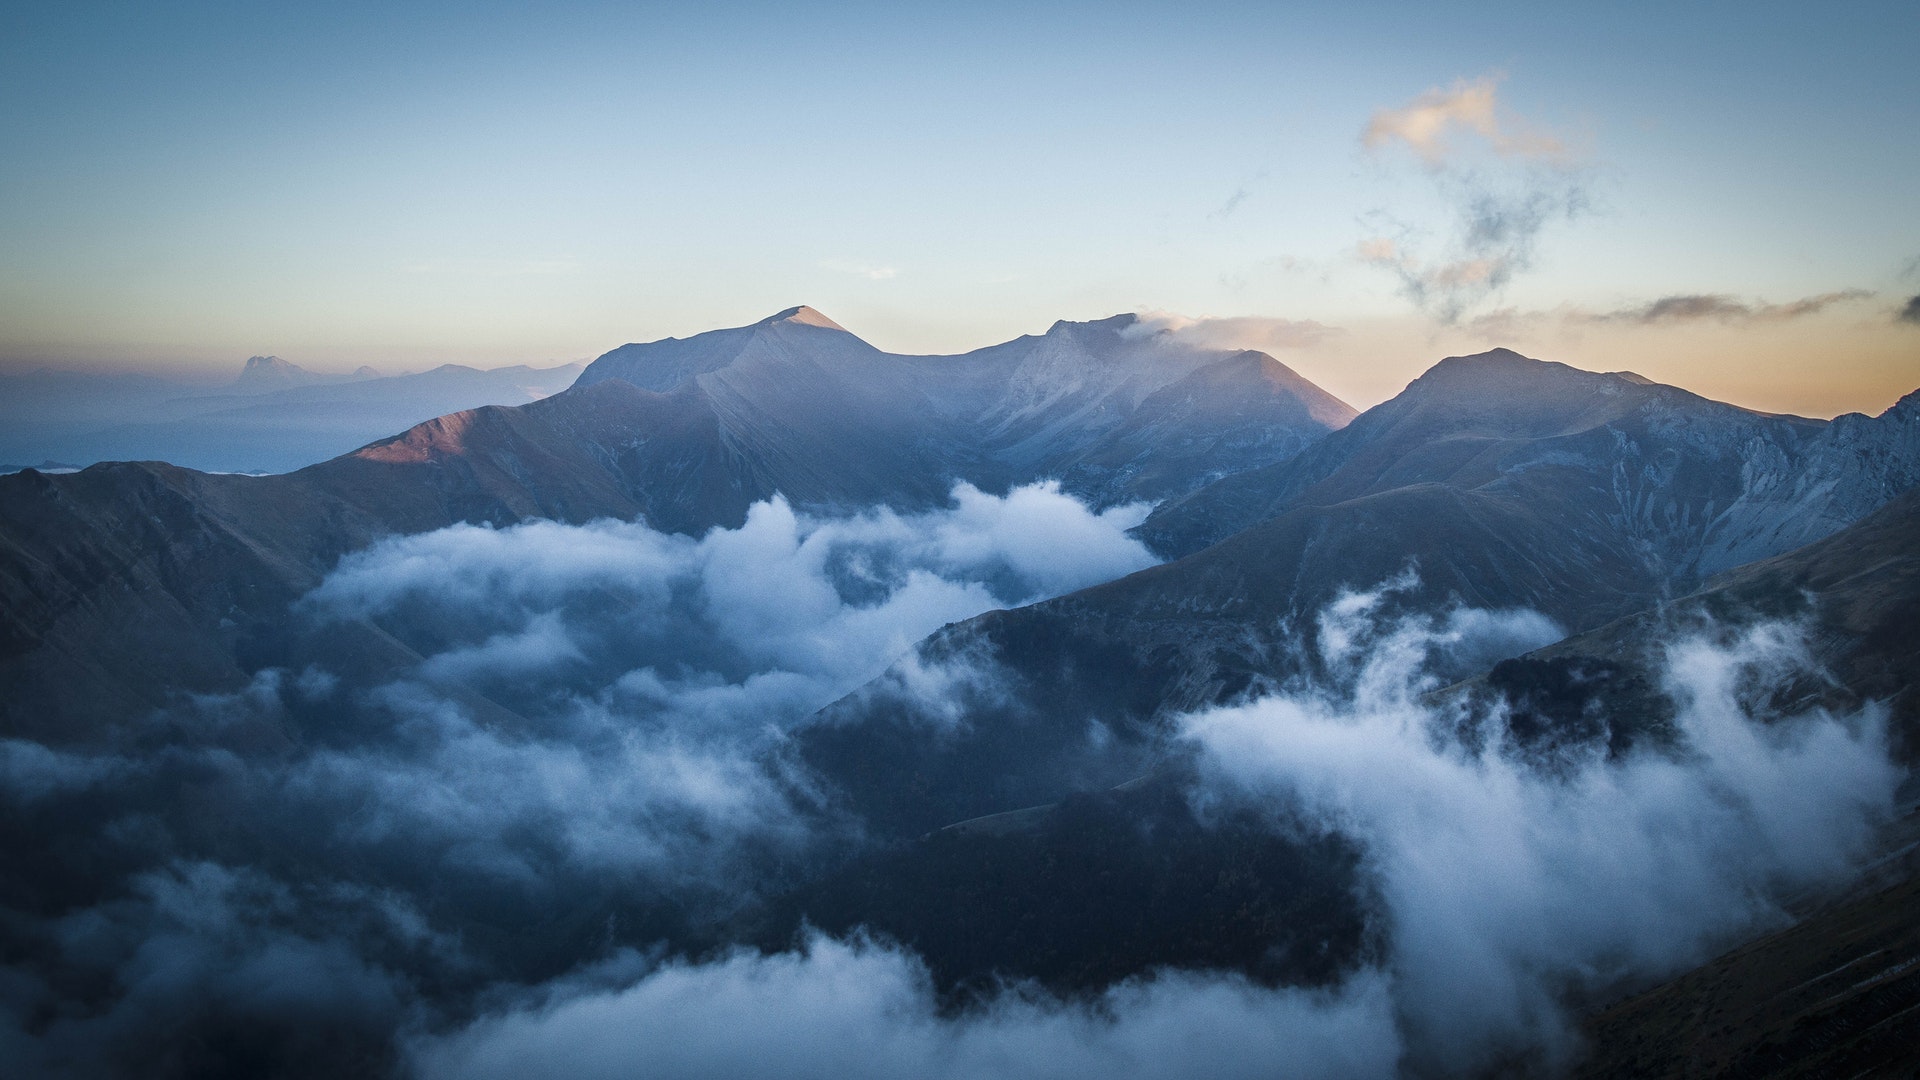 山峰图片素材 壮丽的山峰美景摄影图片(2)